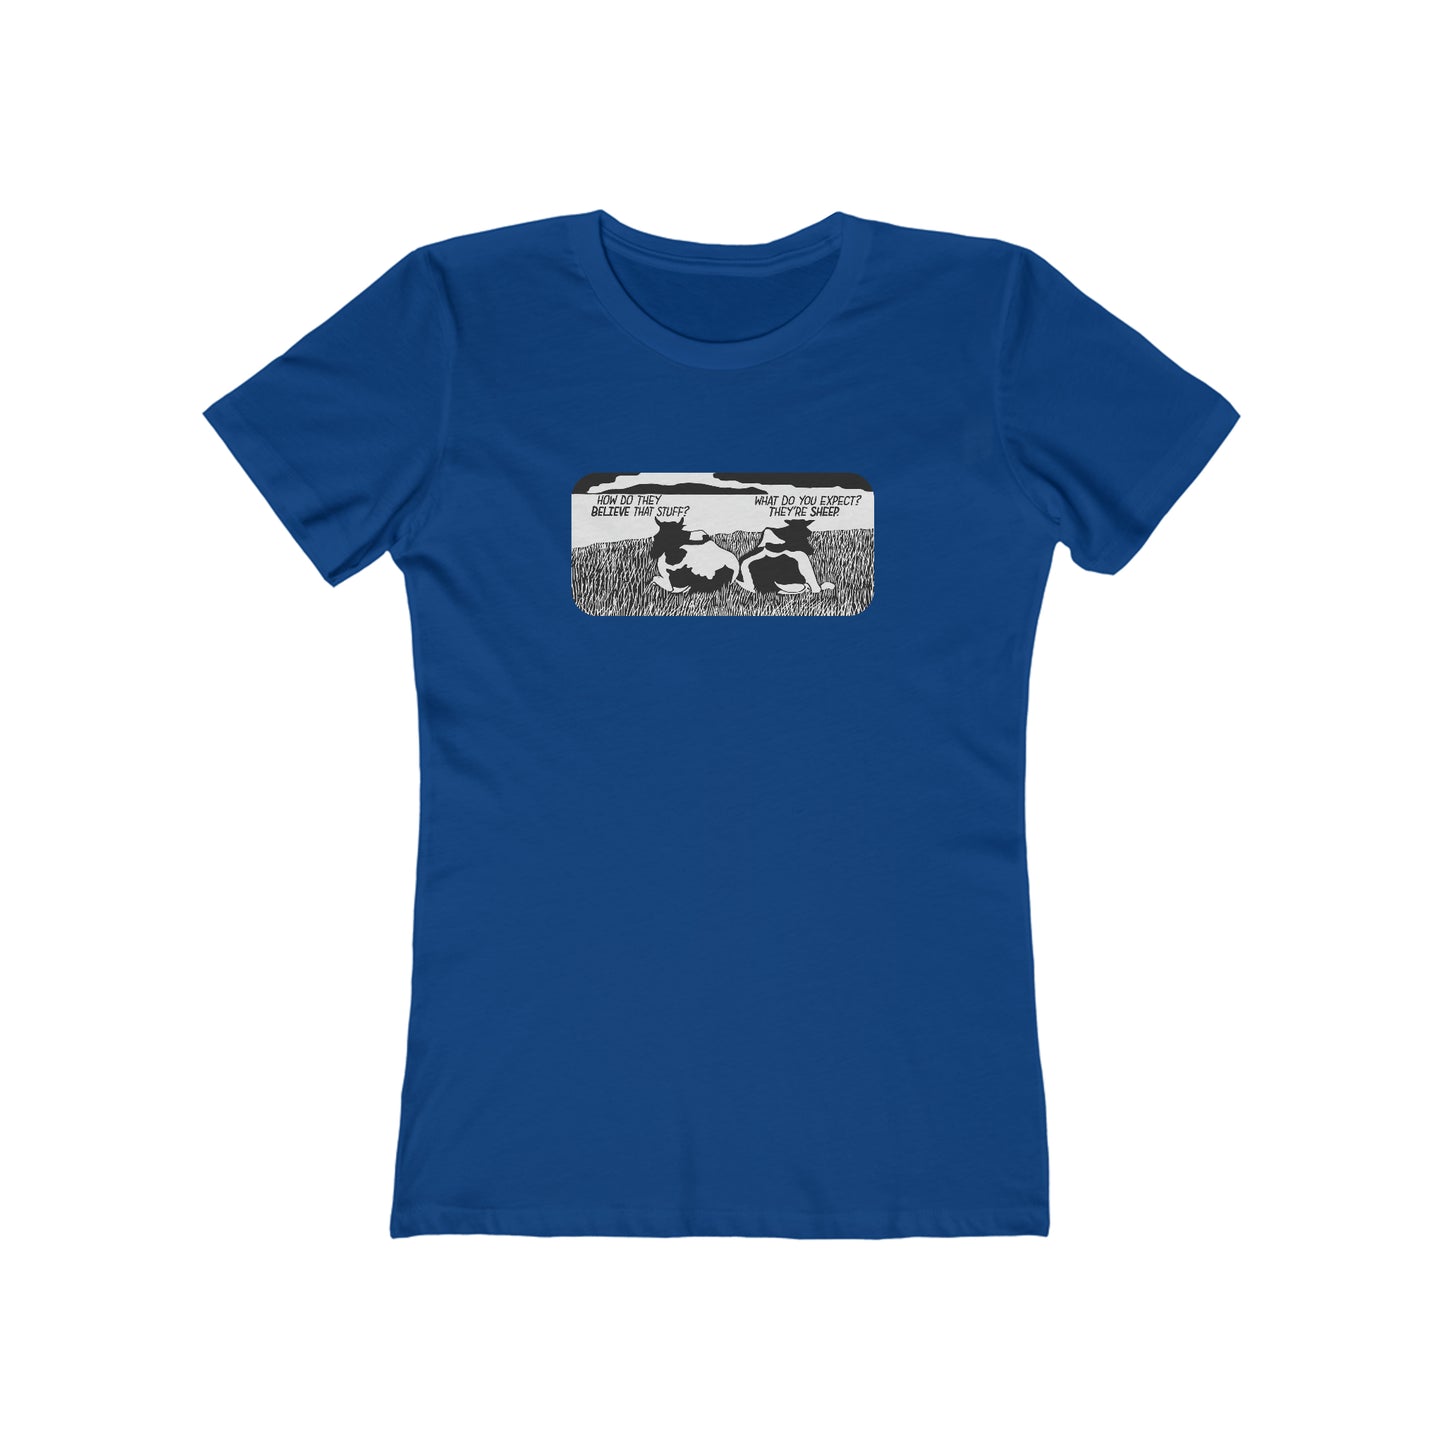 They're Sheep - Women's T-Shirt